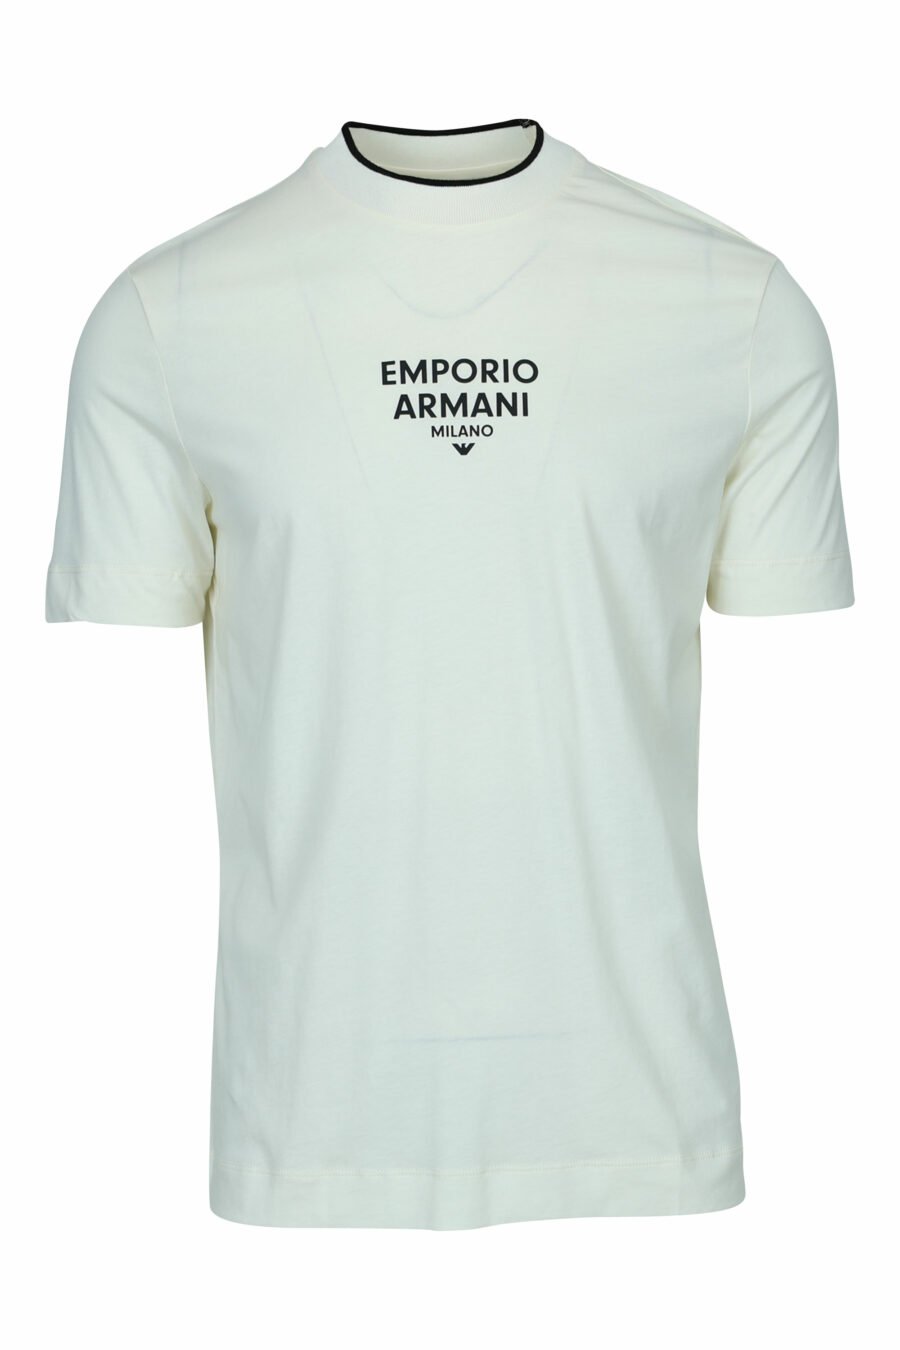 Camiseta color crema con minilogo "emporio" centrado - 8057970991724